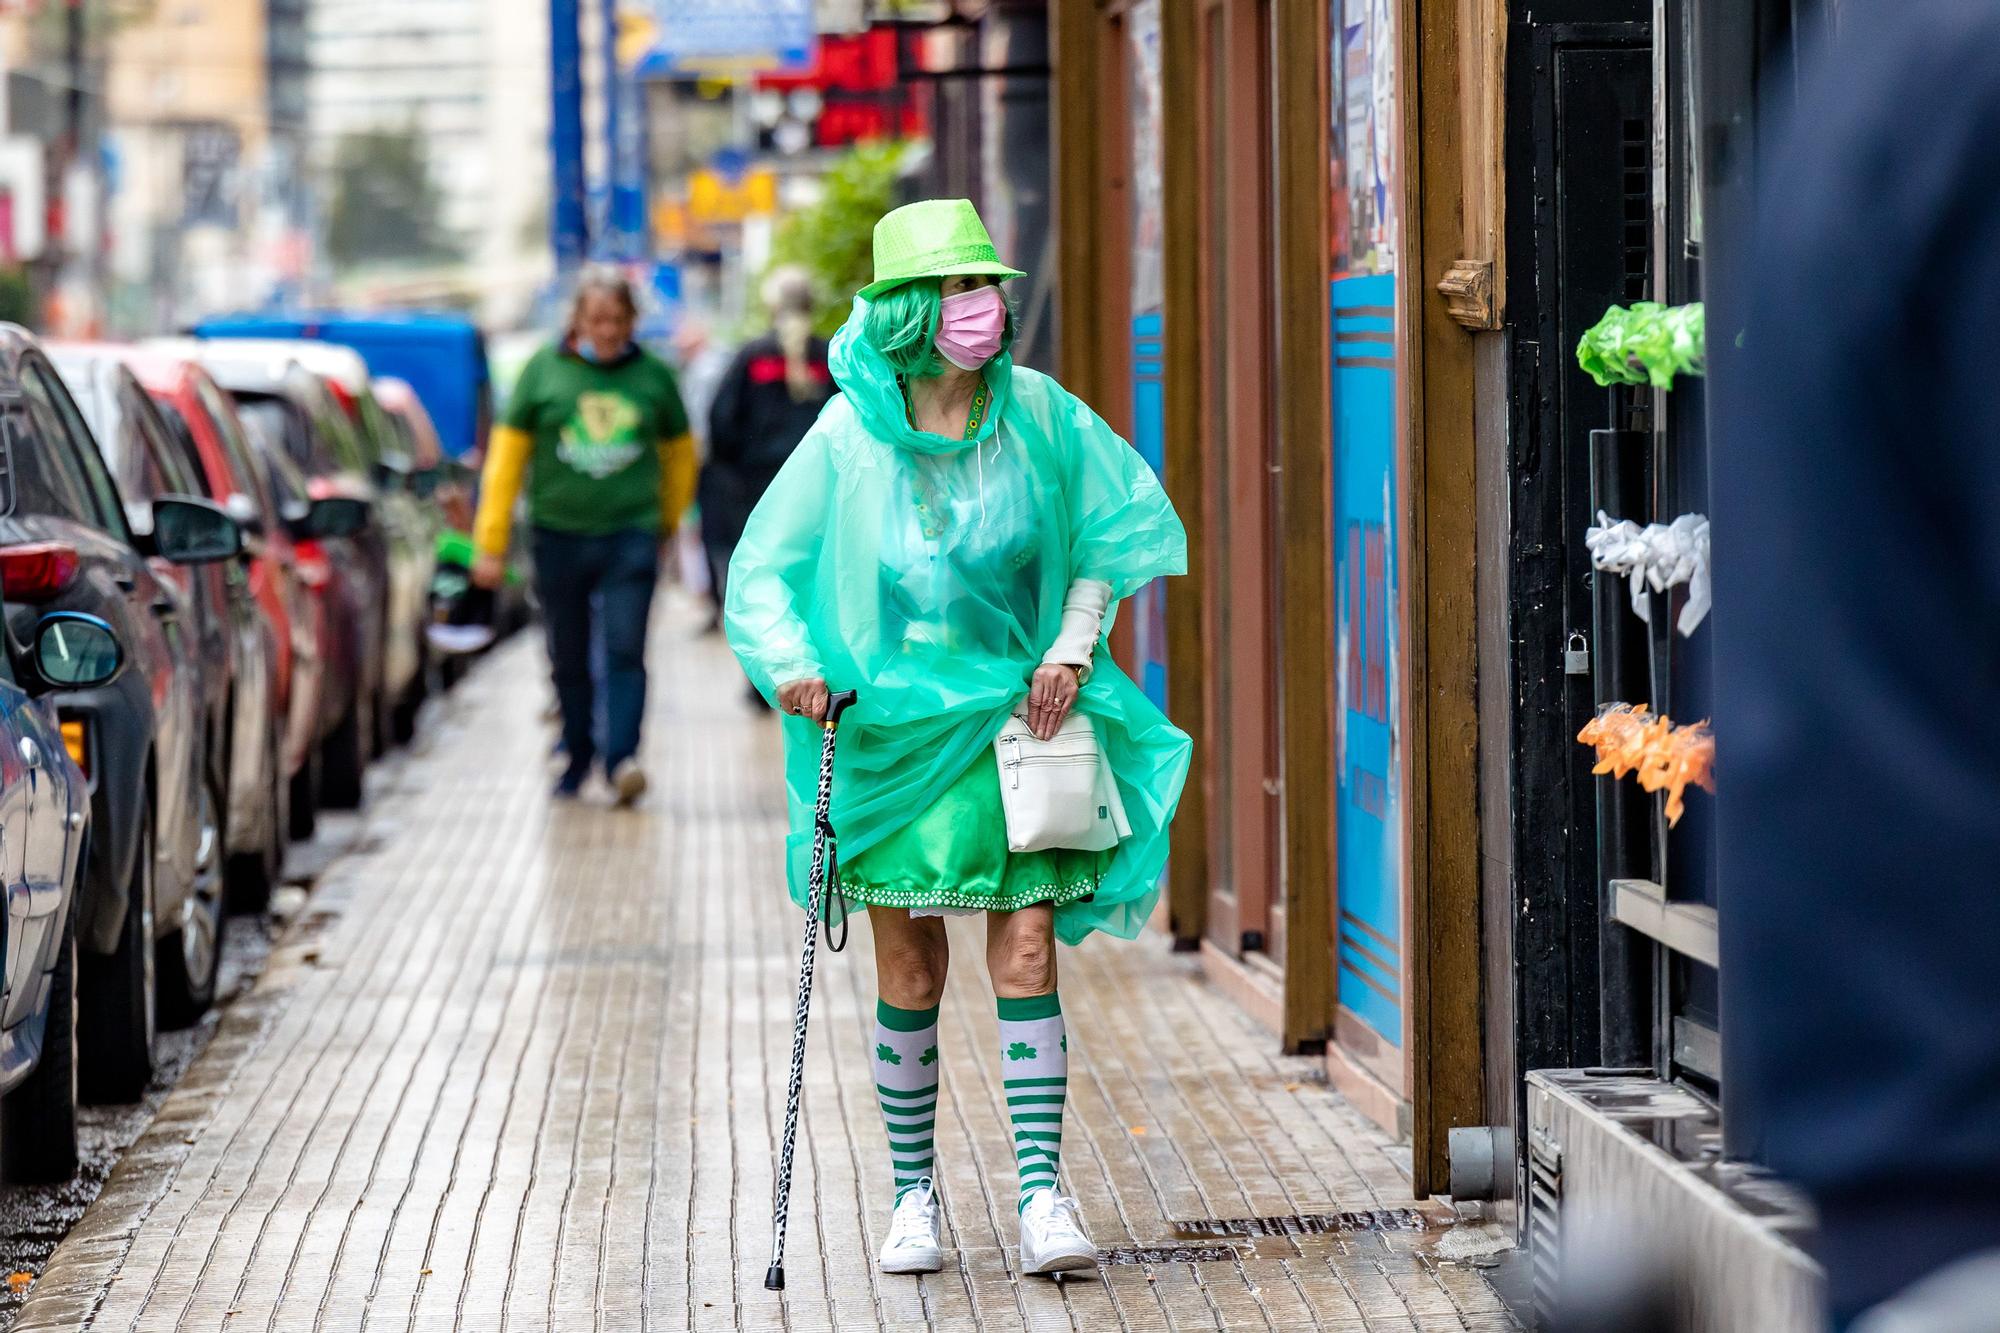 Esta tradicional fiesta llena de verde las calles de la zona inglesa | Los turistas se refugian en terrazas y bares ante las precipitaciones pero no desisten de la celebración